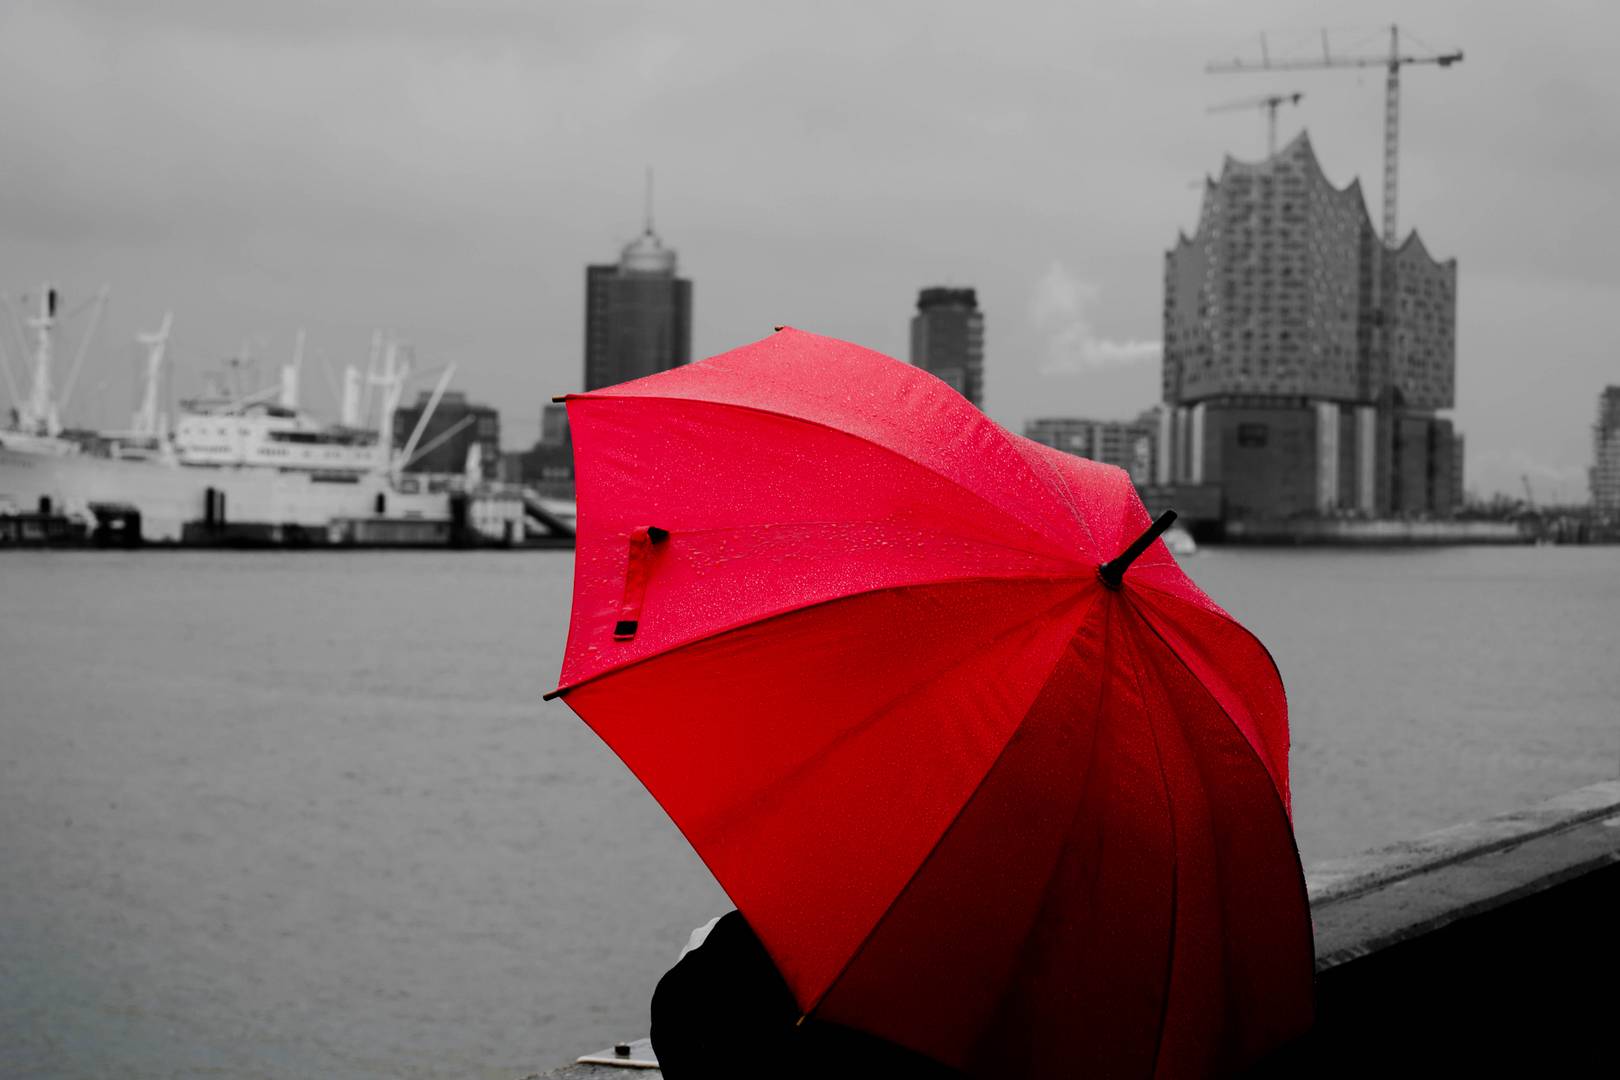 Roter Regenschirm